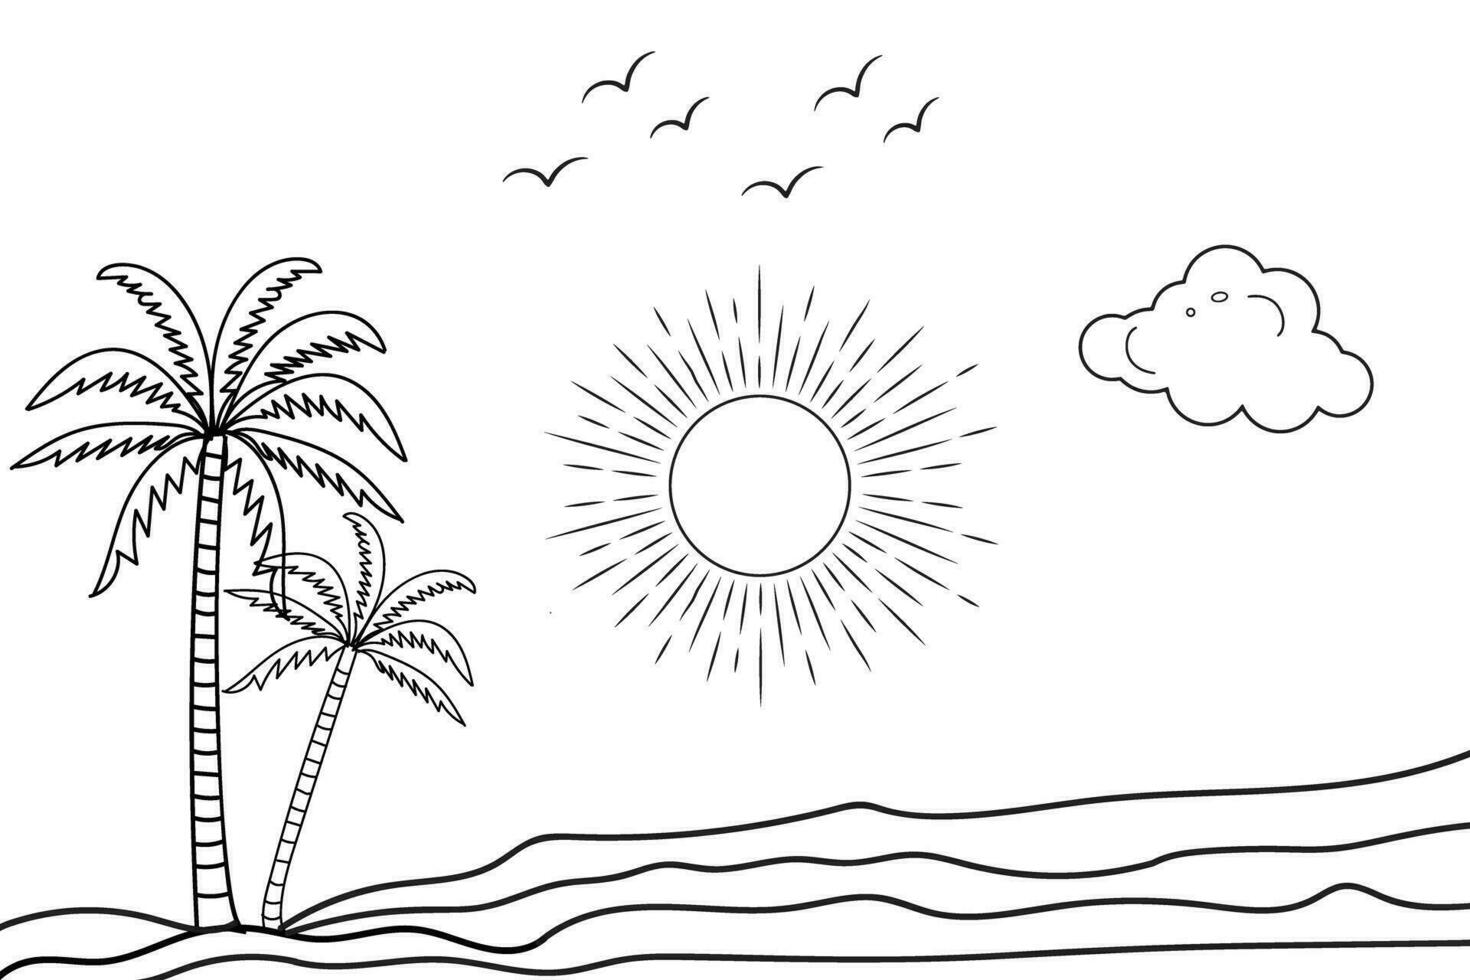 verano puesta de sol tropical playa línea Arte vector ilustración, mano dibujado puesta de sol y amanecer contorno paisaje tropical playa, palma árbol con puesta de sol olas naturaleza vista, niños dibujo playa colorante paginas